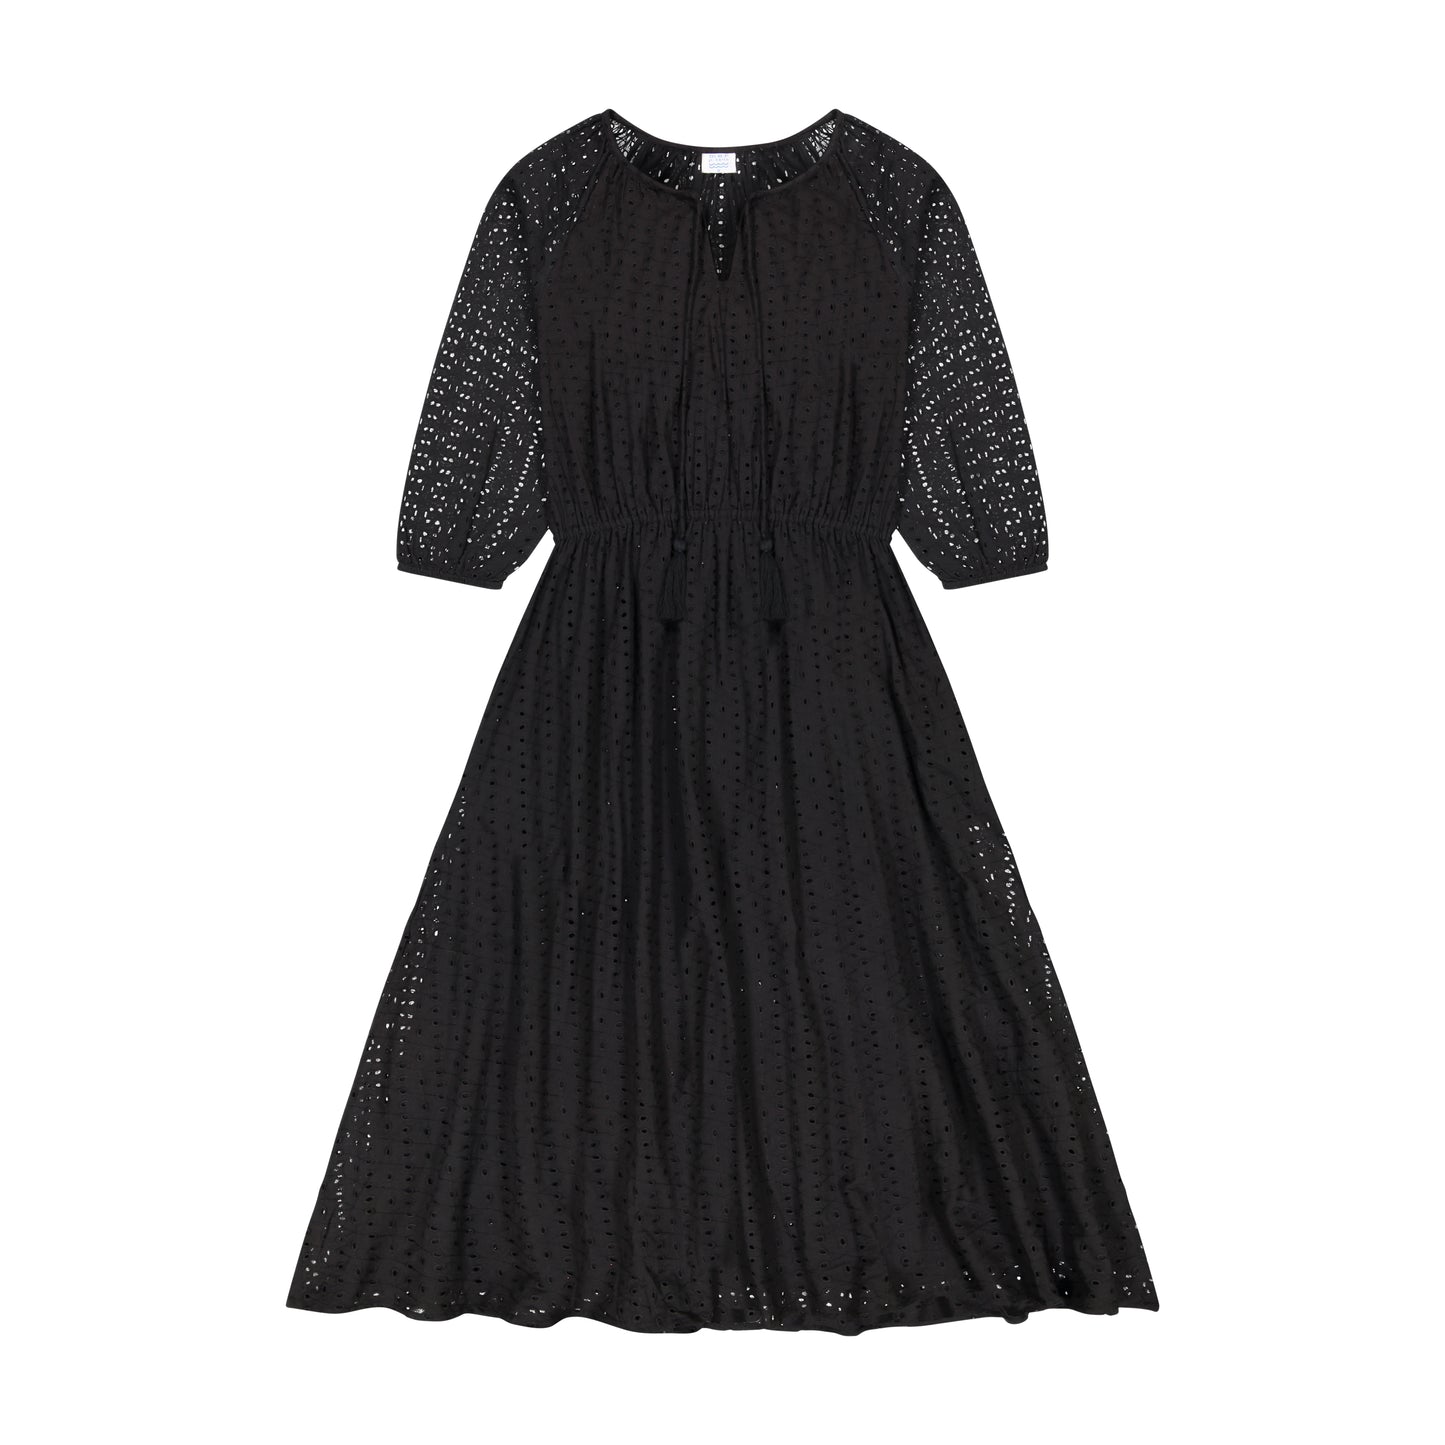 Solange Women's Popover Dress Midi Length Black Eyelet